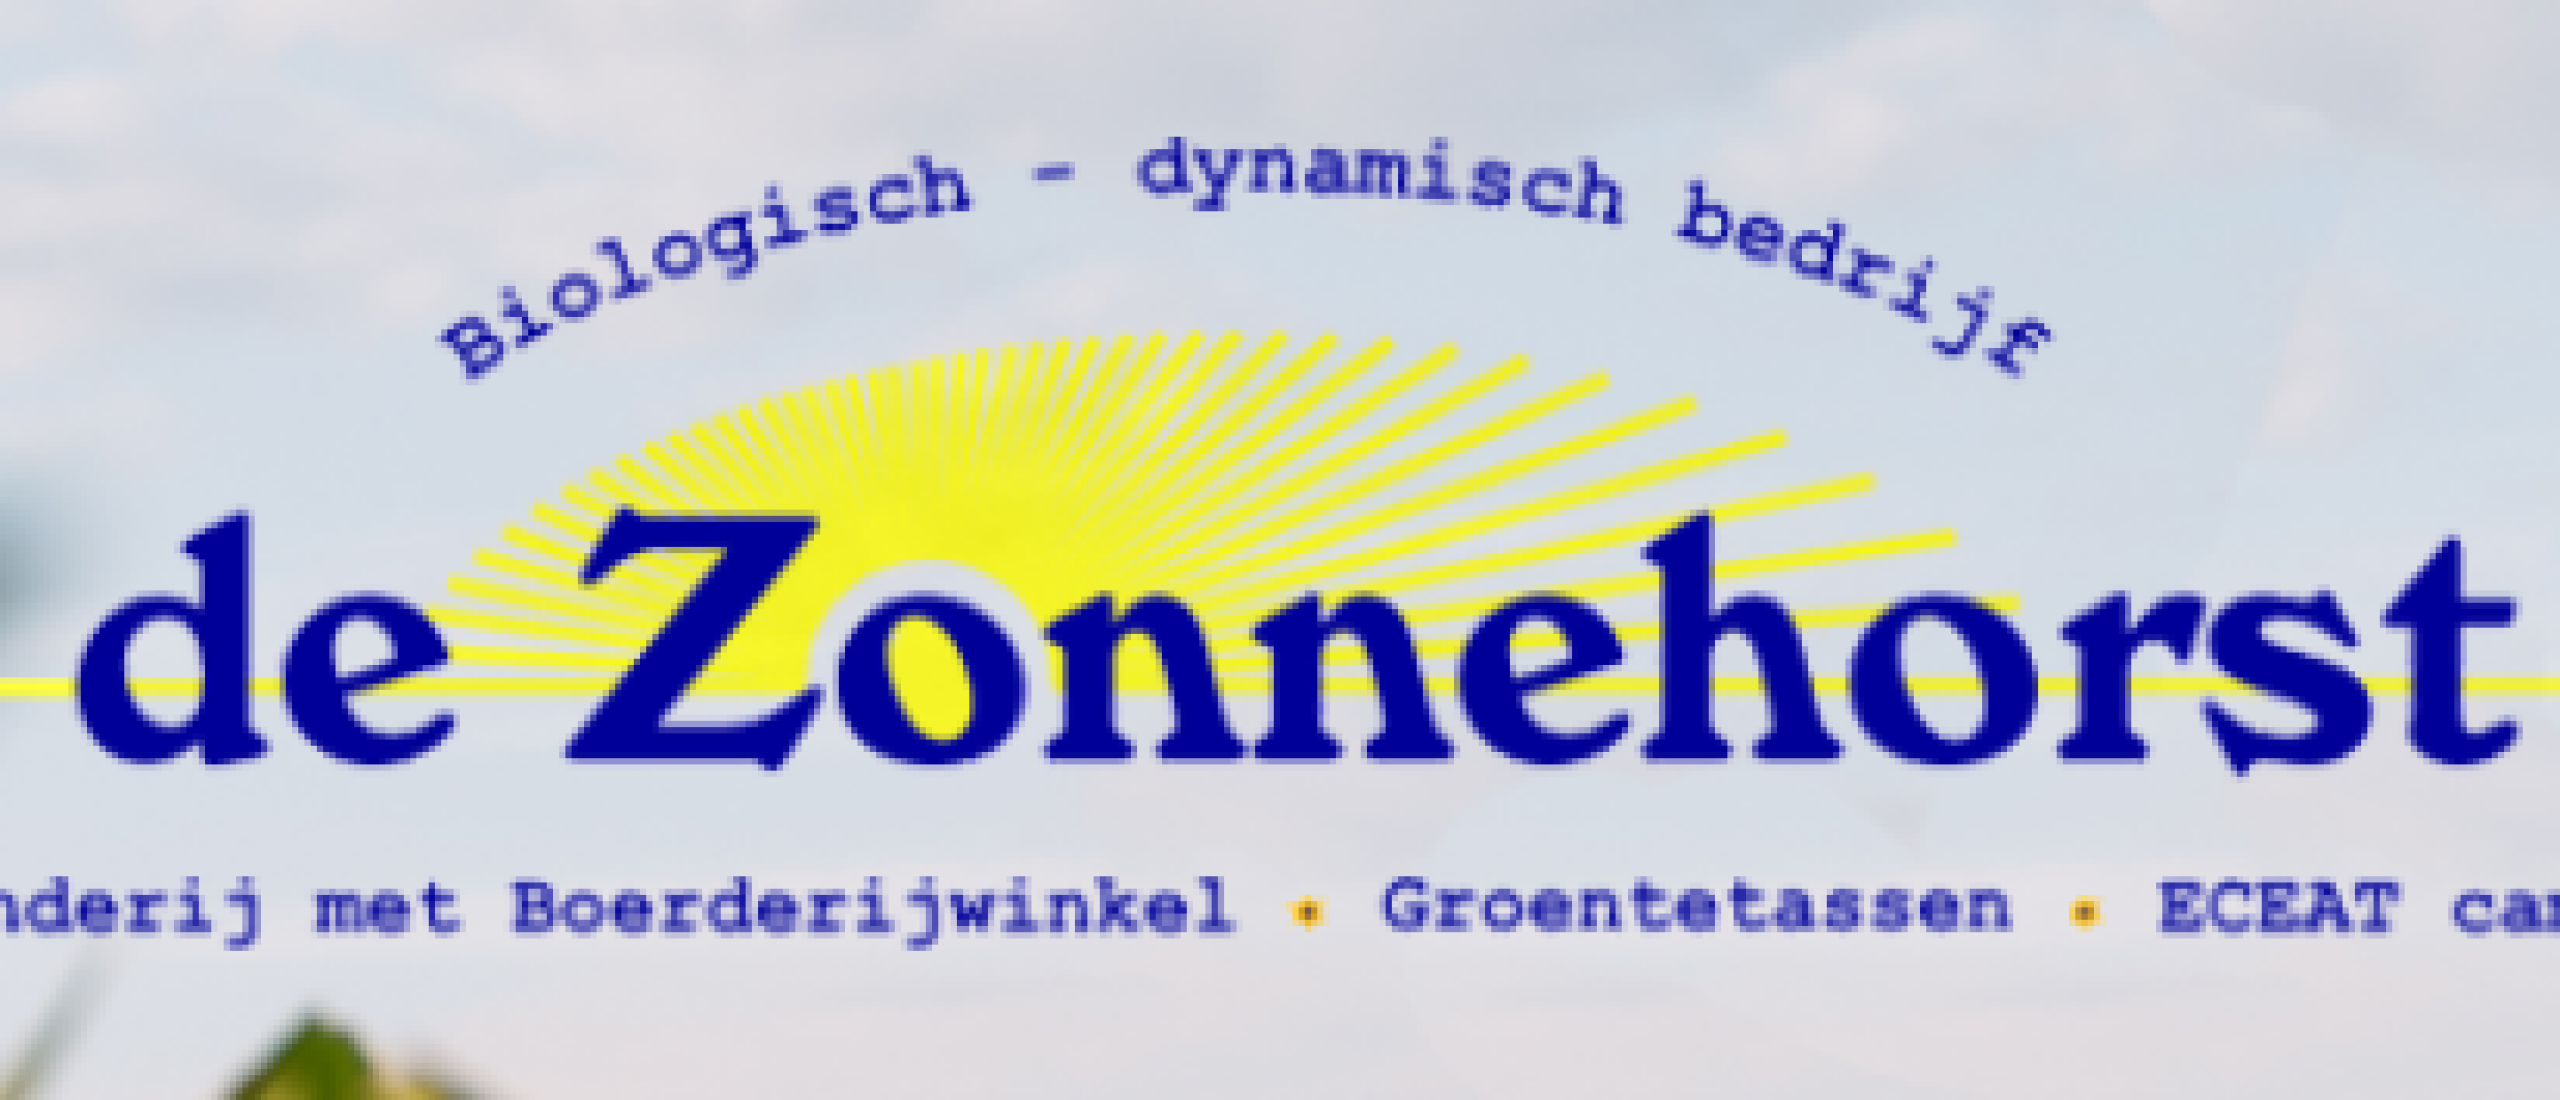 Bioblitz de Zonnehorst leverde verrassende resultaten op